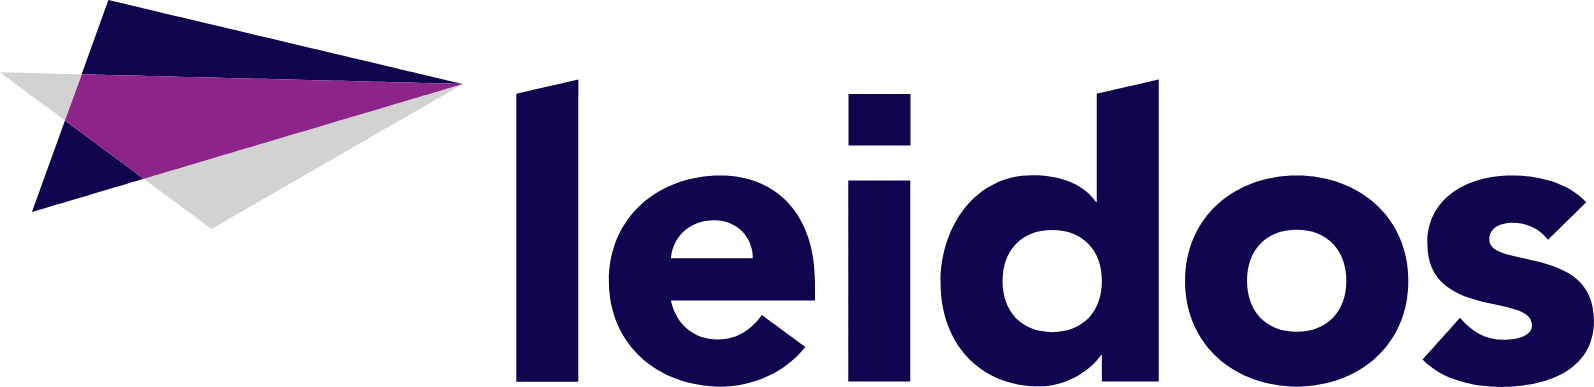 Leidos logo large (transparent PNG)